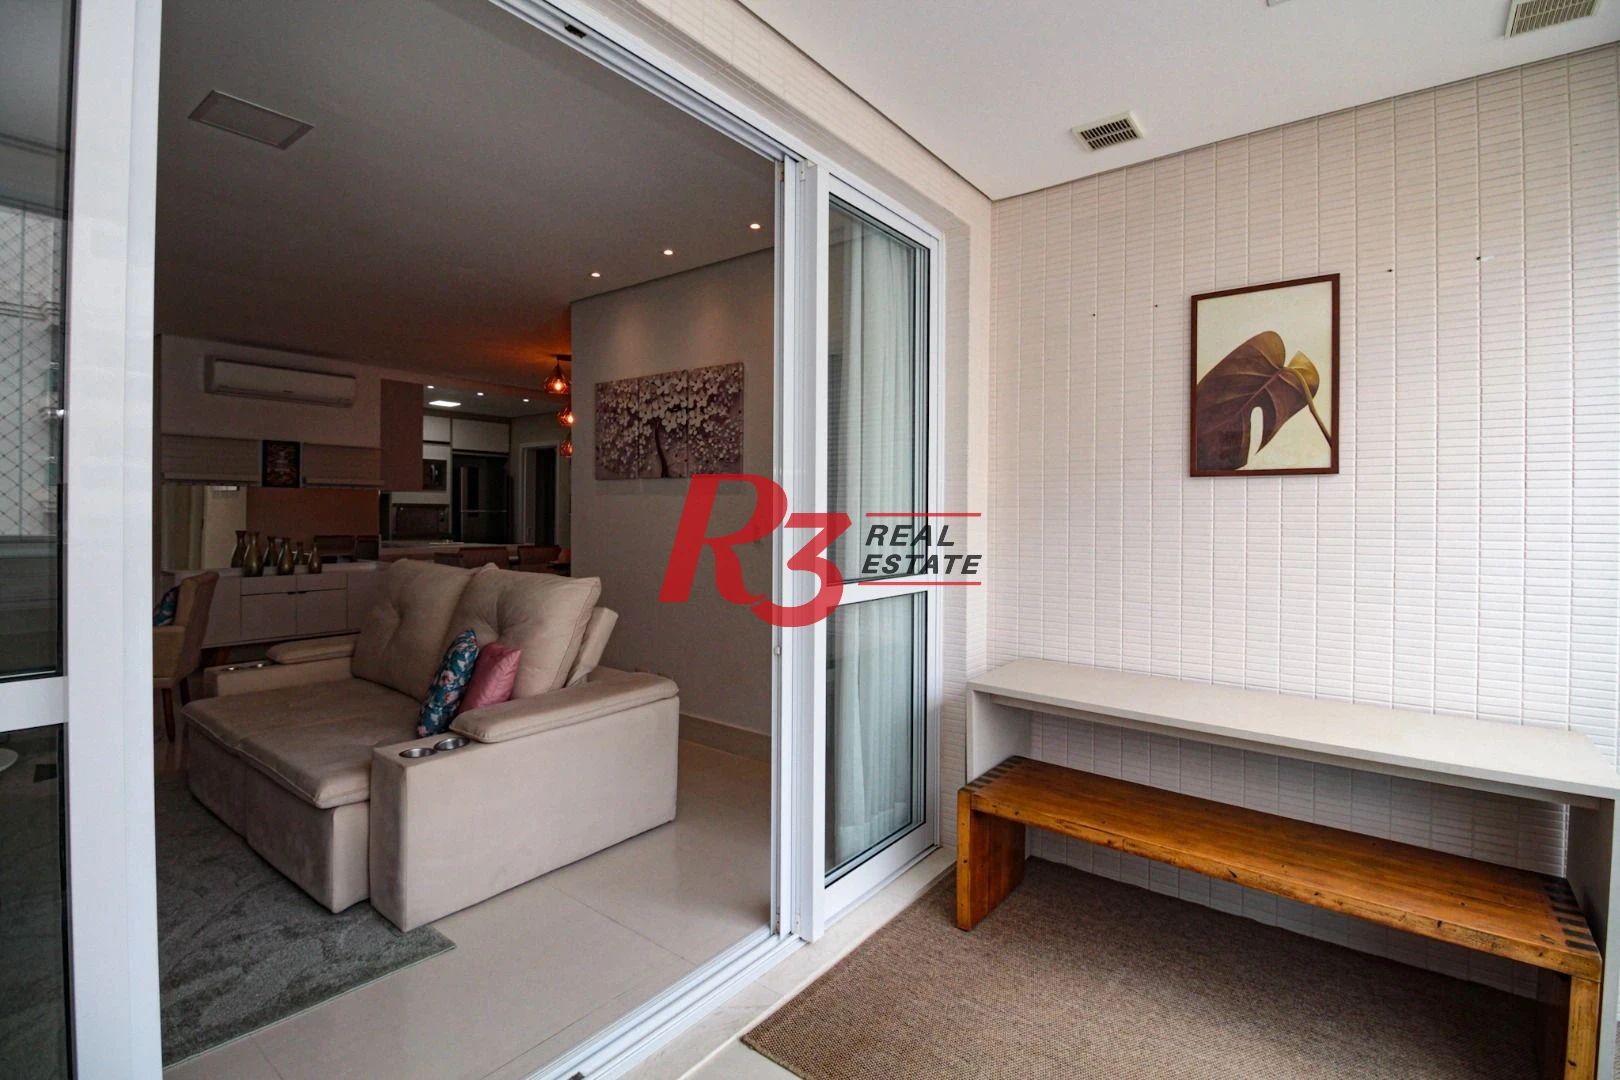 Apartamento com 1 dormitório para alugar, 95 m² por R$ 8.500,00/mês - Aparecida - Santos/SP